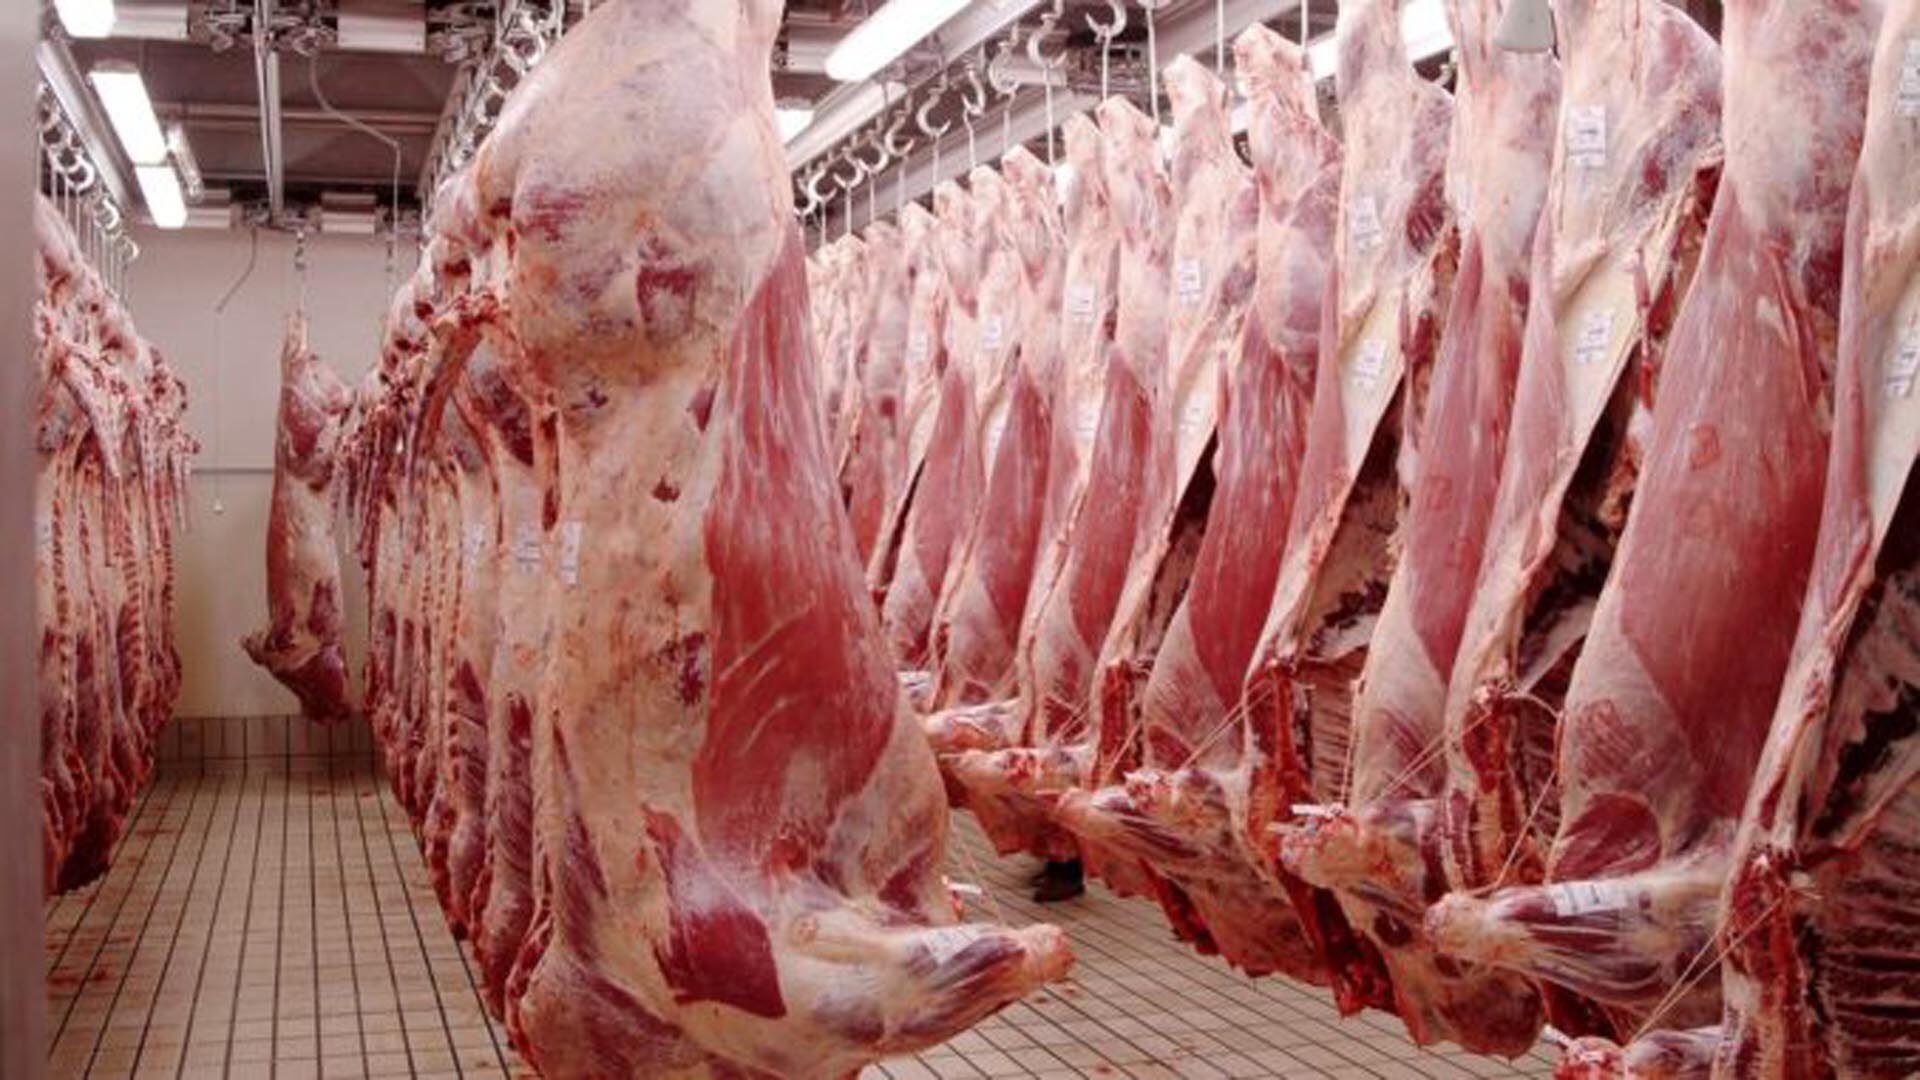 Las exportaciones de carne vacuna aumentaron en 2020 en volumen, pro hubo una merma en los ingresos, por la caída de los precios internacionales 